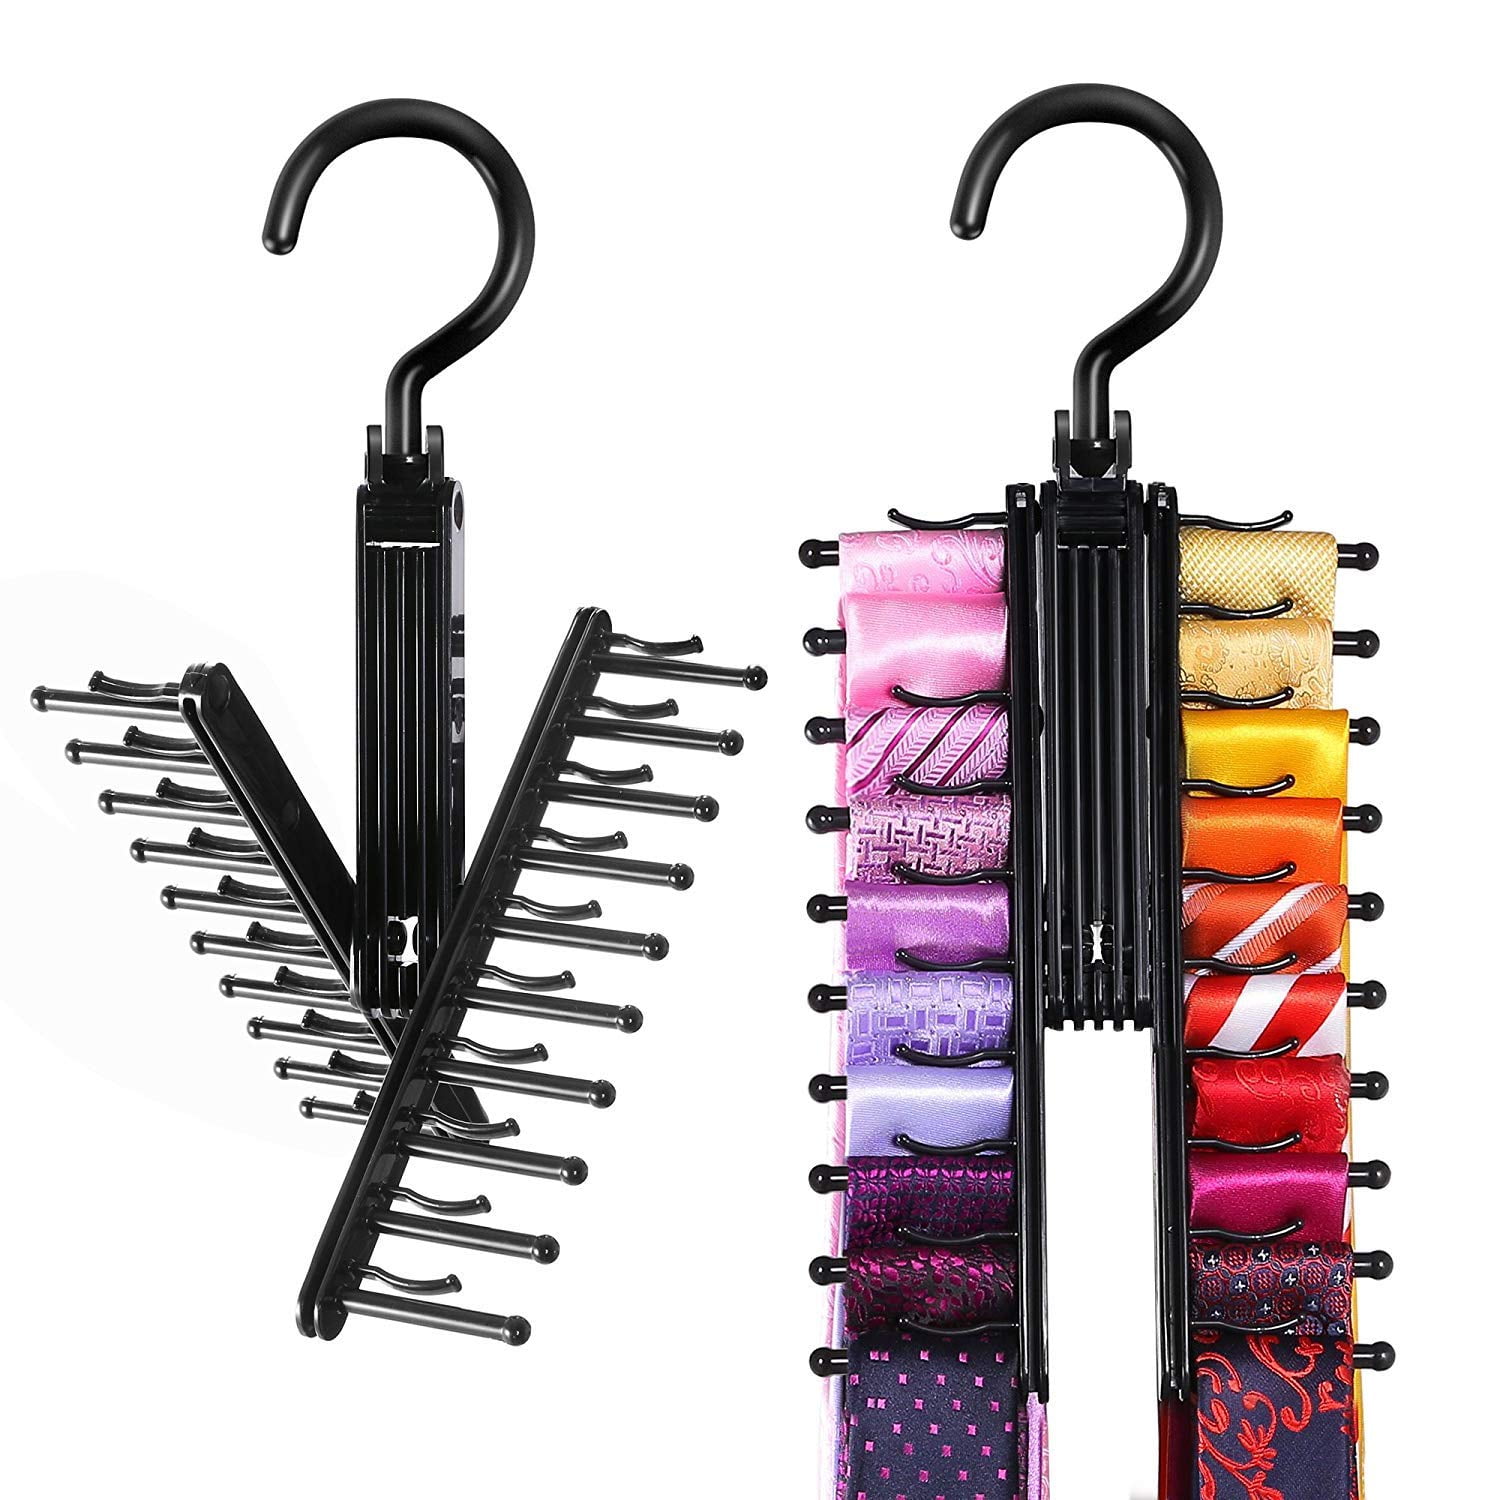 2X Tie Rack Hanger Rotating Adjustable Tie Holds 20 Ties Belts Organiser For Men 